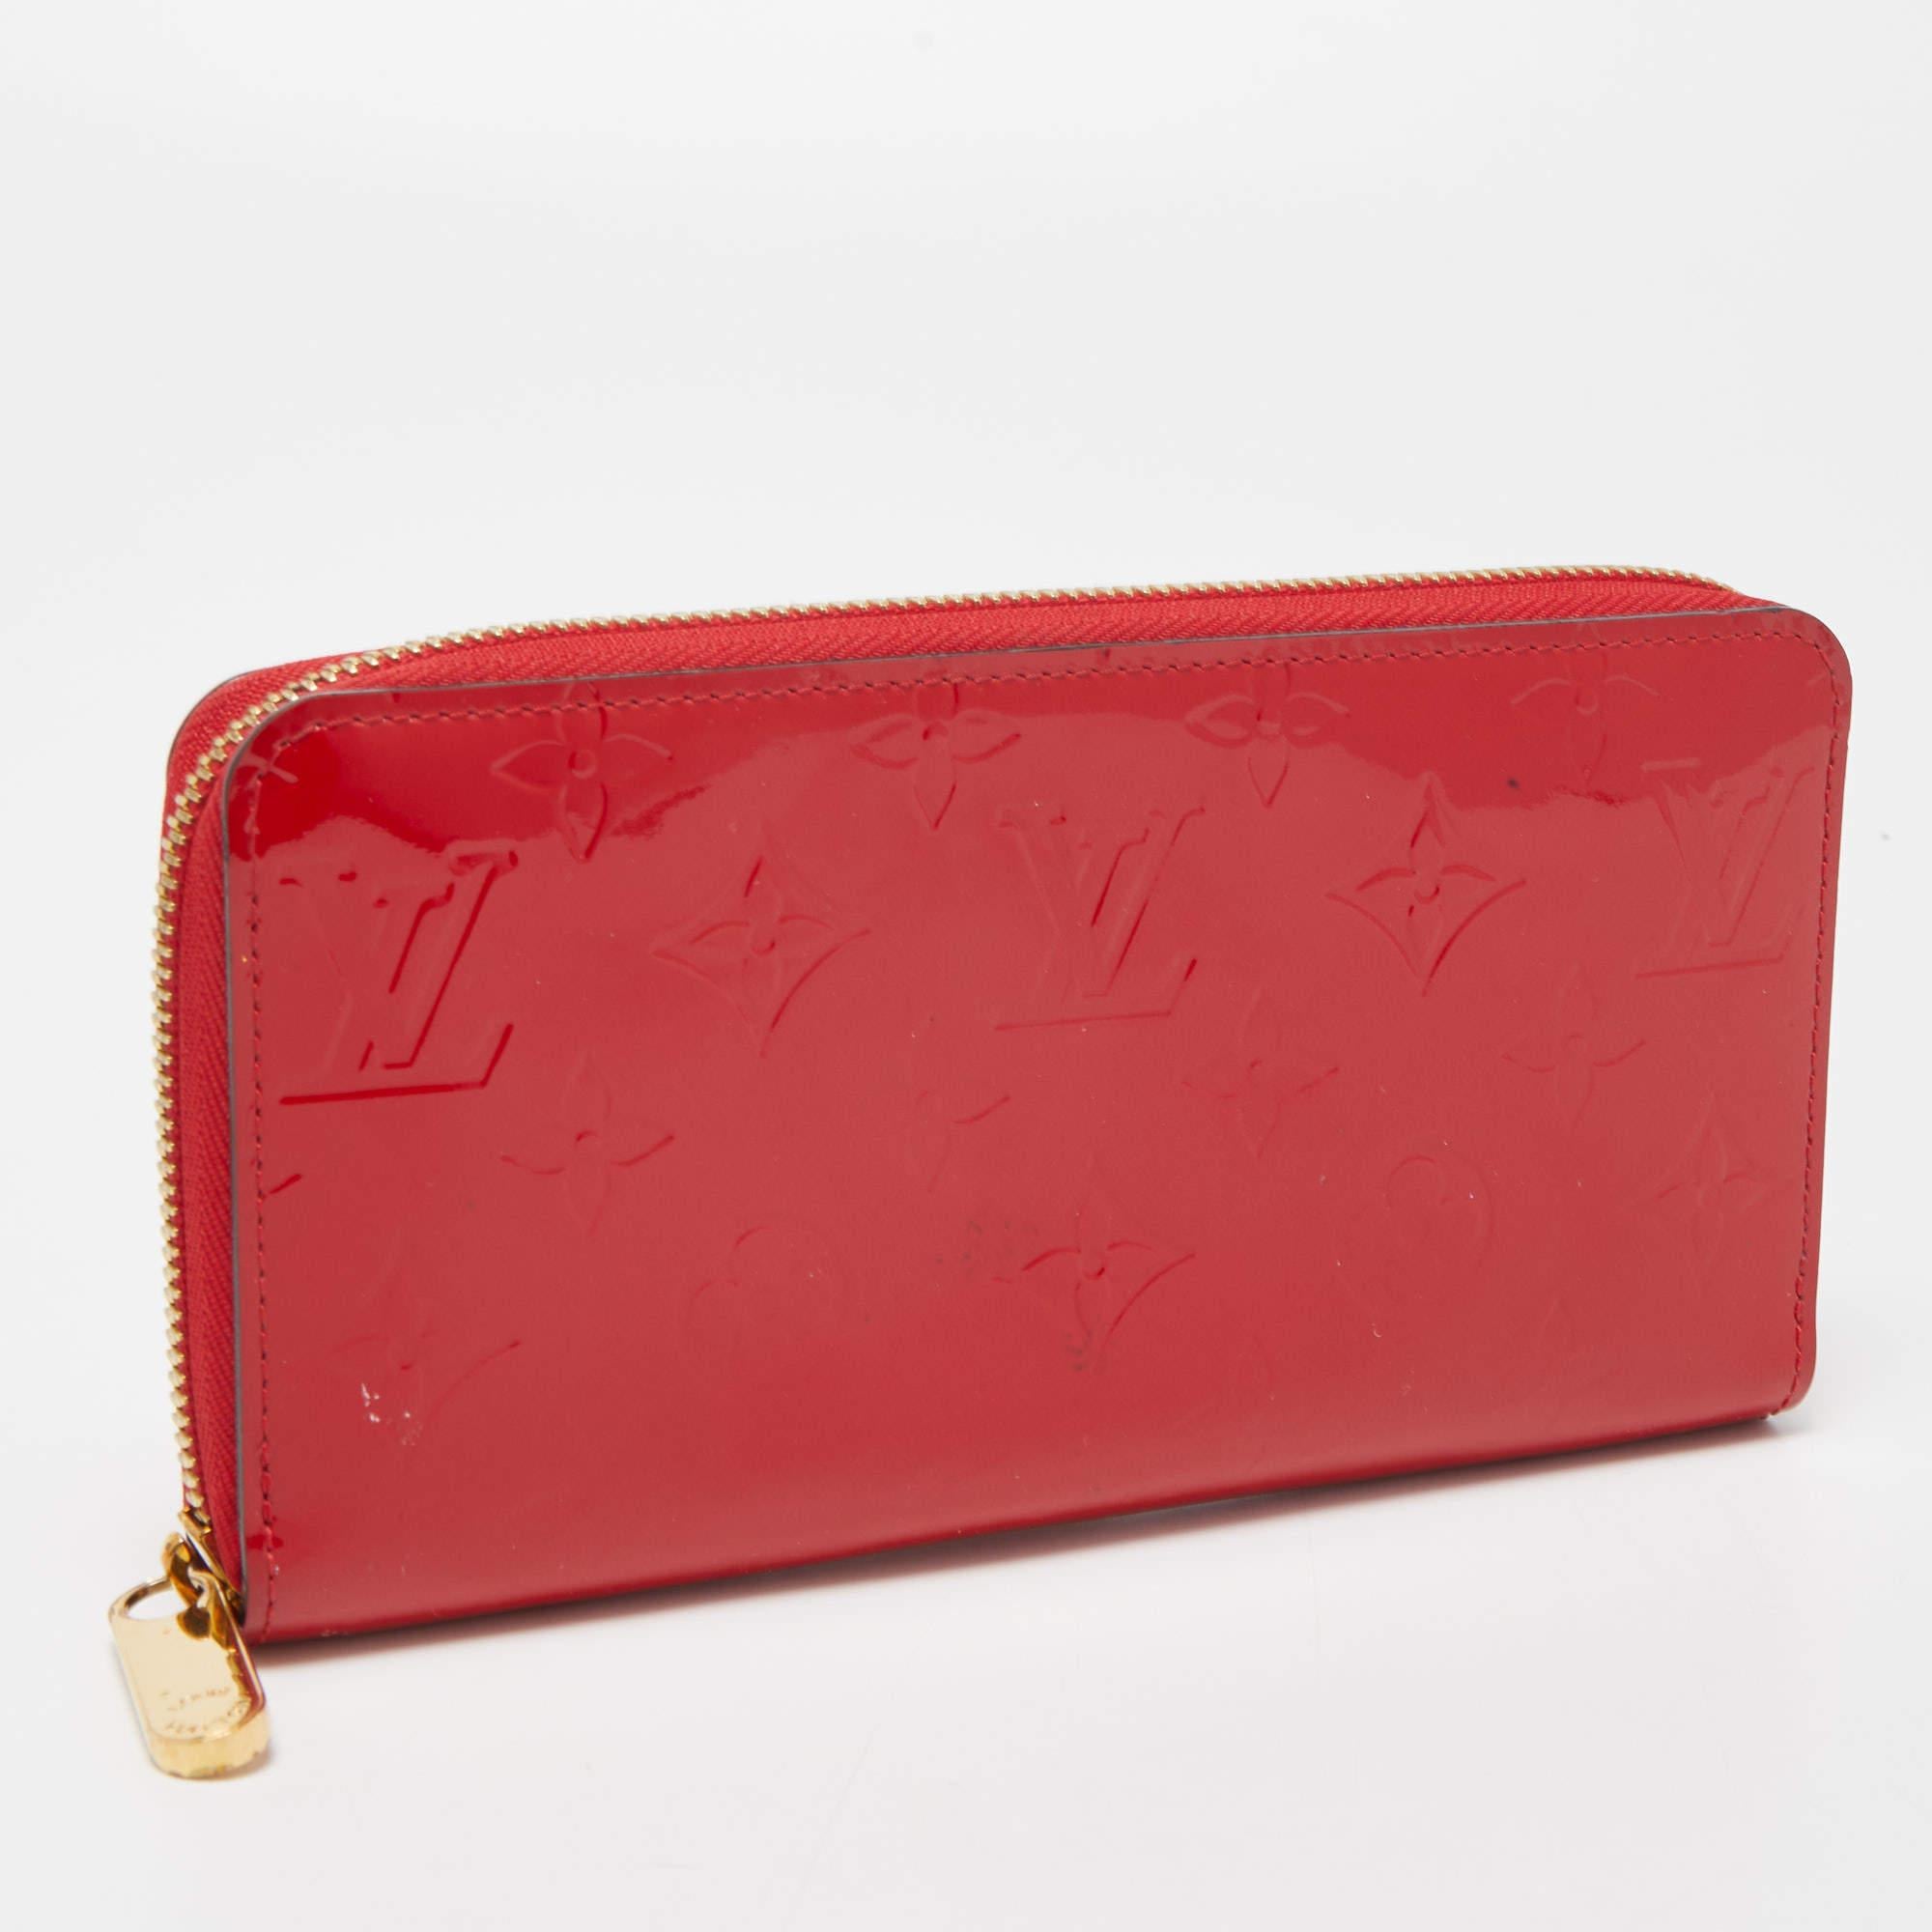 Red Louis Vuitton Cerise Monogram Vernis Zippy Wallet